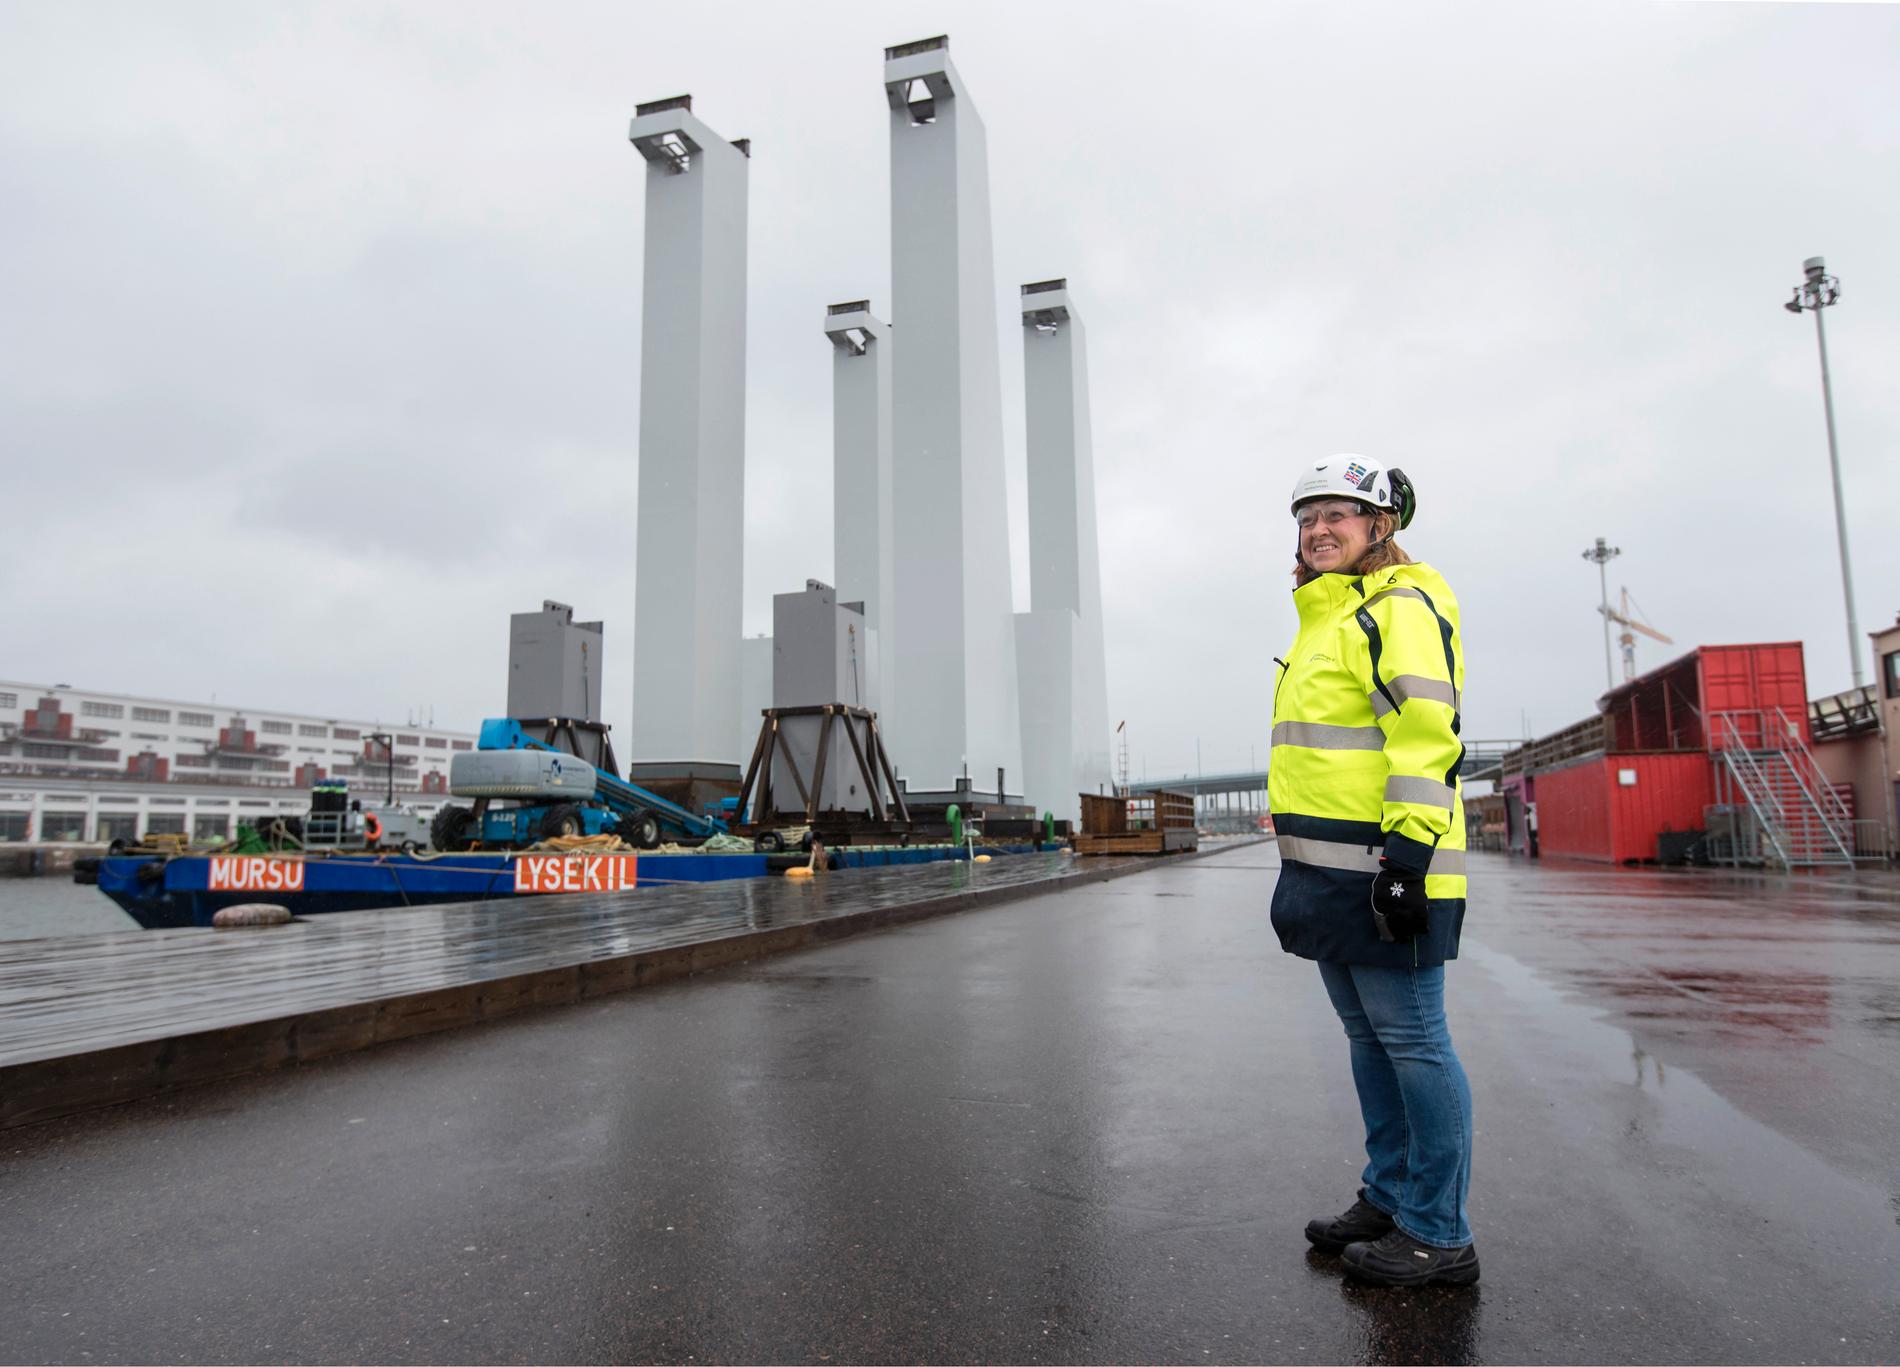 ”Det kommer att bli häftigt att se när pylonerna lyfts på plats i början på nästa vecka”, säger Susanne Viberg, projektledare på Trafikkontoret för Hisingsbron.